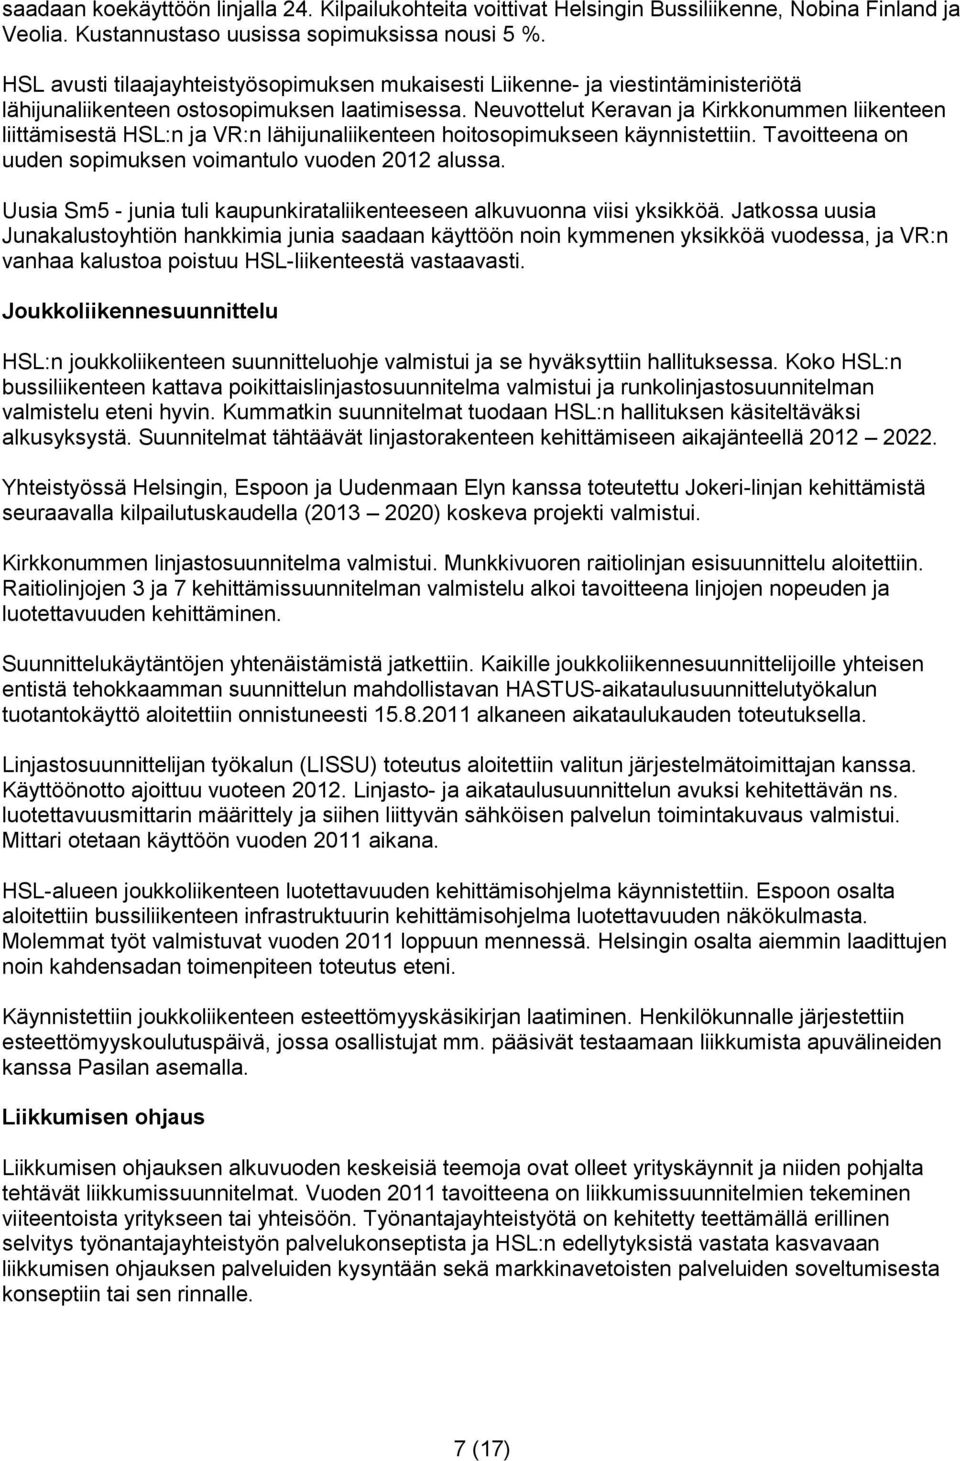 Neuvottelut Keravan ja Kirkkonummen liikenteen liittämisestä HSL:n ja VR:n lähijunaliikenteen hoitosopimukseen käynnistettiin. Tavoitteena on uuden sopimuksen voimantulo vuoden 2012 alussa.